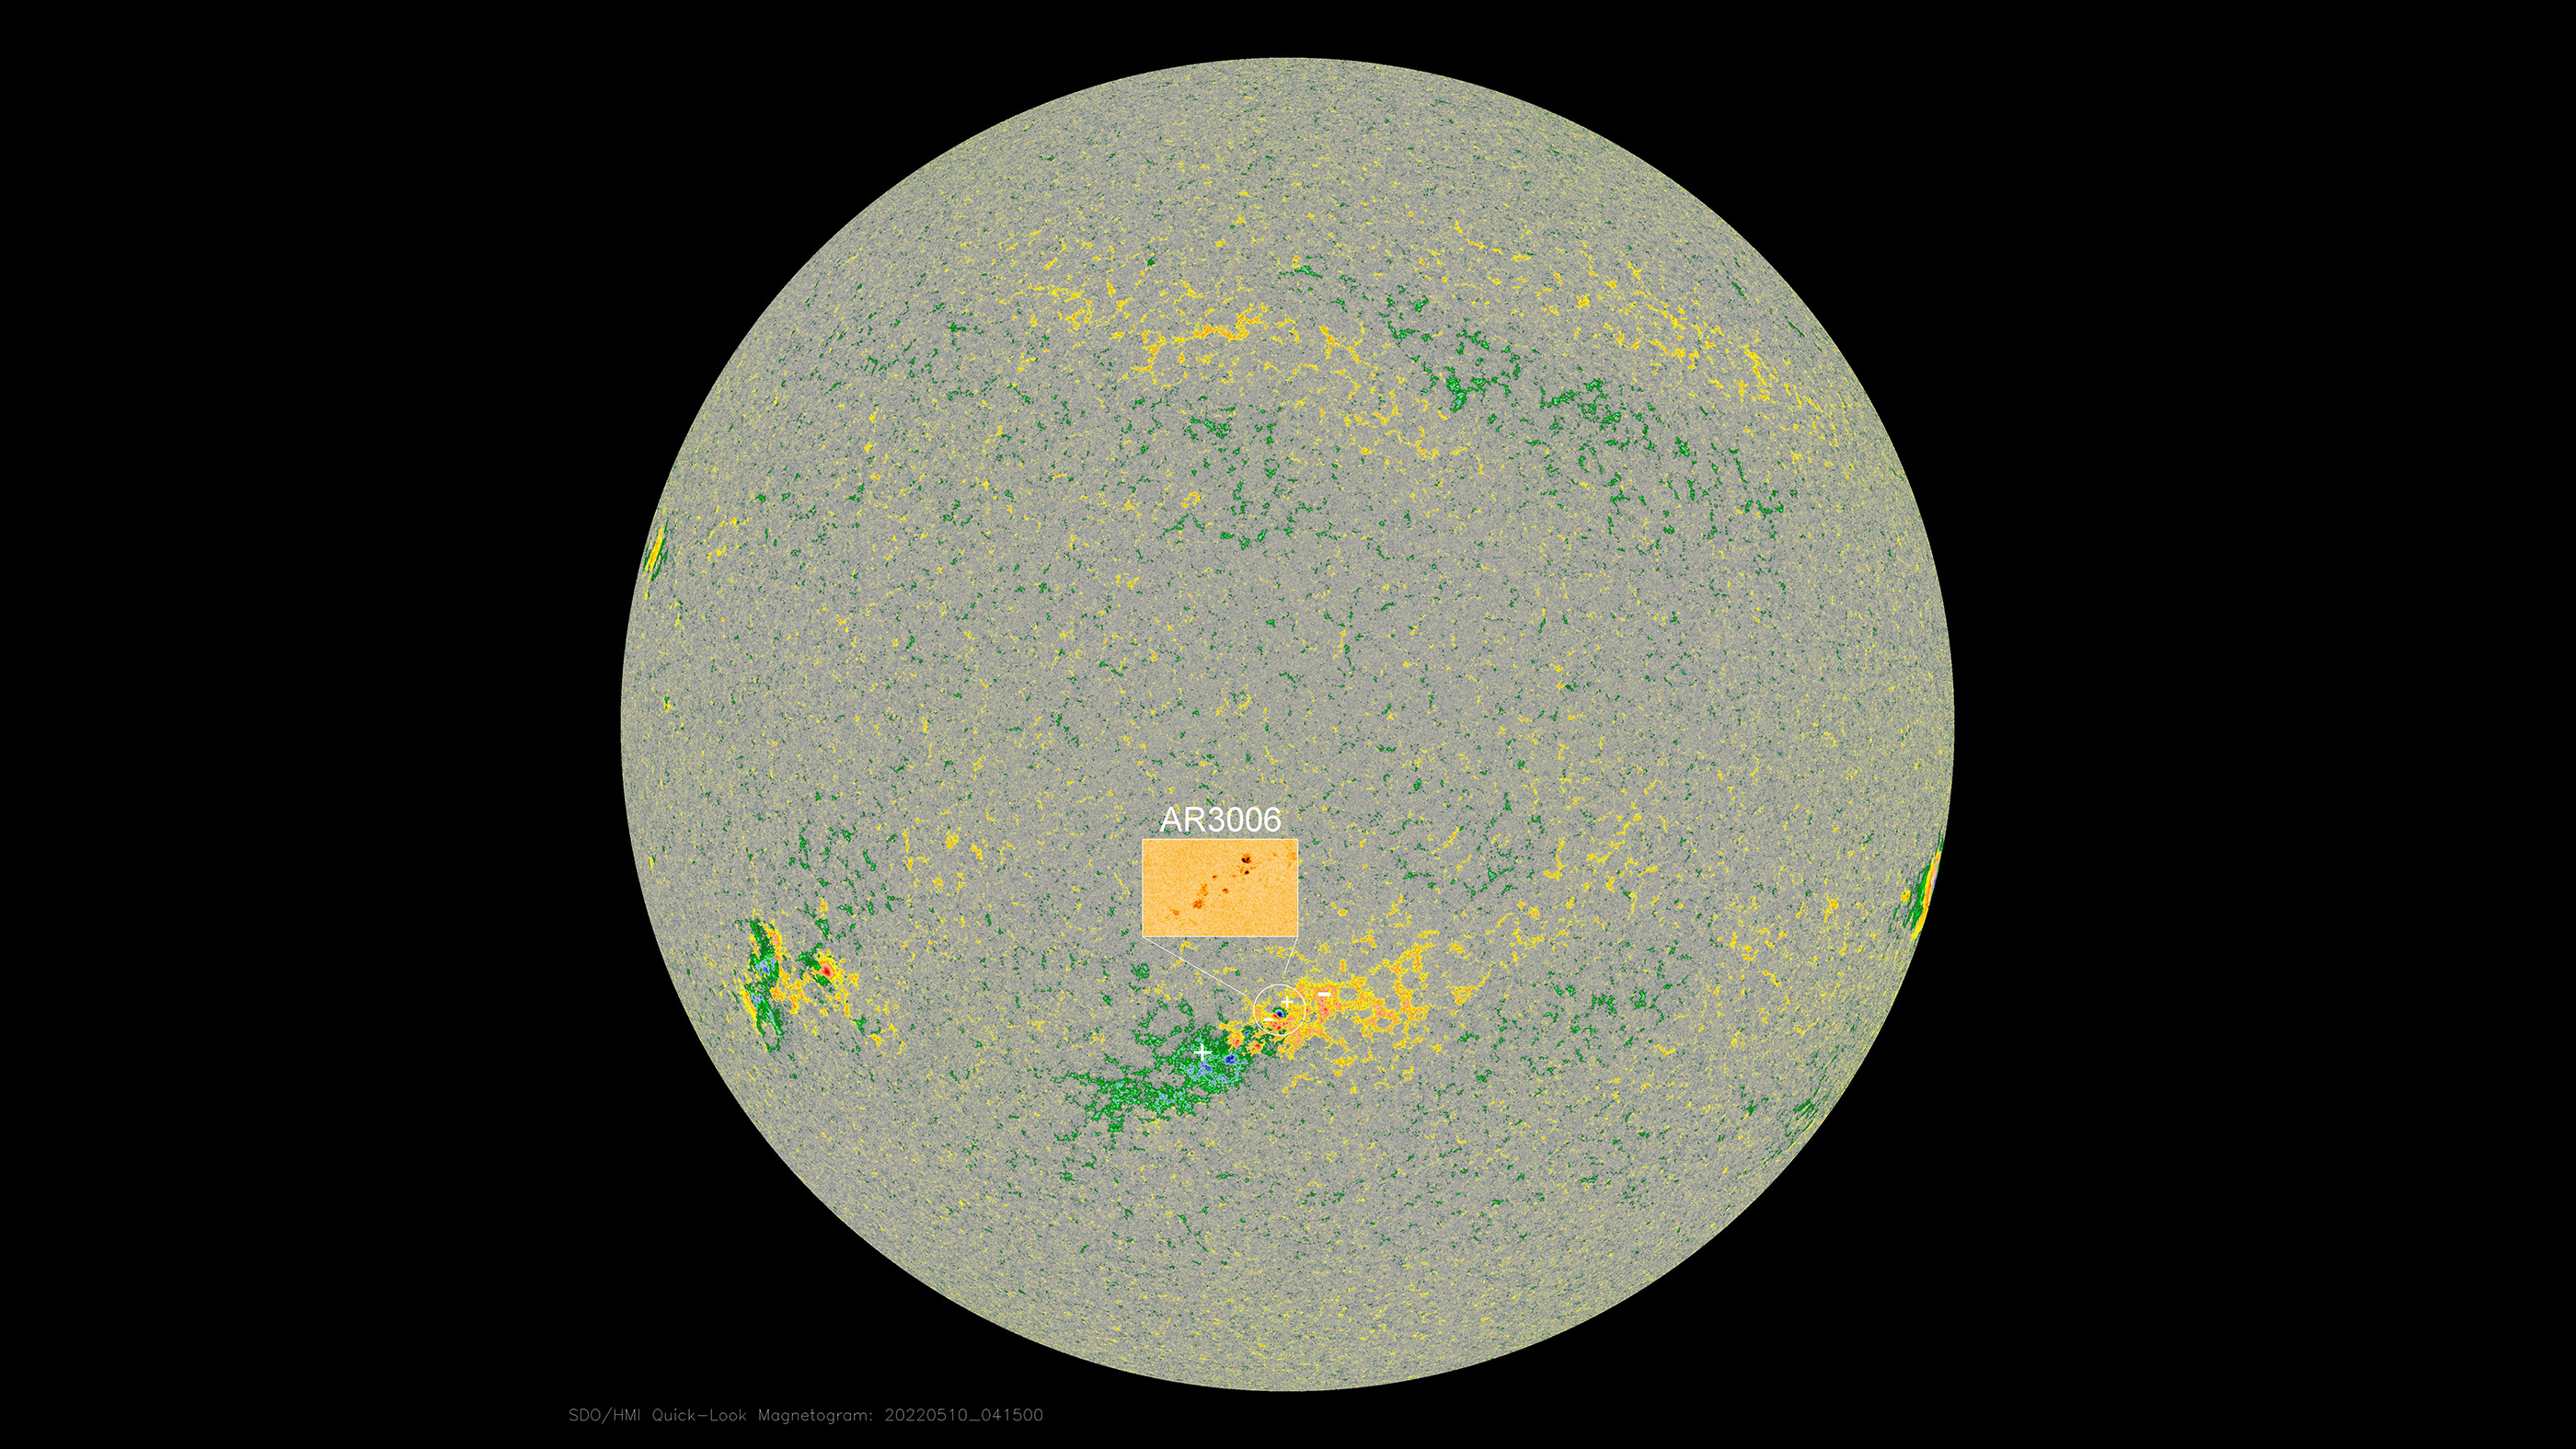 Zonnevlekkengebied AR3006 werd een paar dagen geleden voor het eerst gezien en is nu gedraaid tot nabij het centrum van de zichtbare schijf van de zon, bijna direct op de aarde gericht.